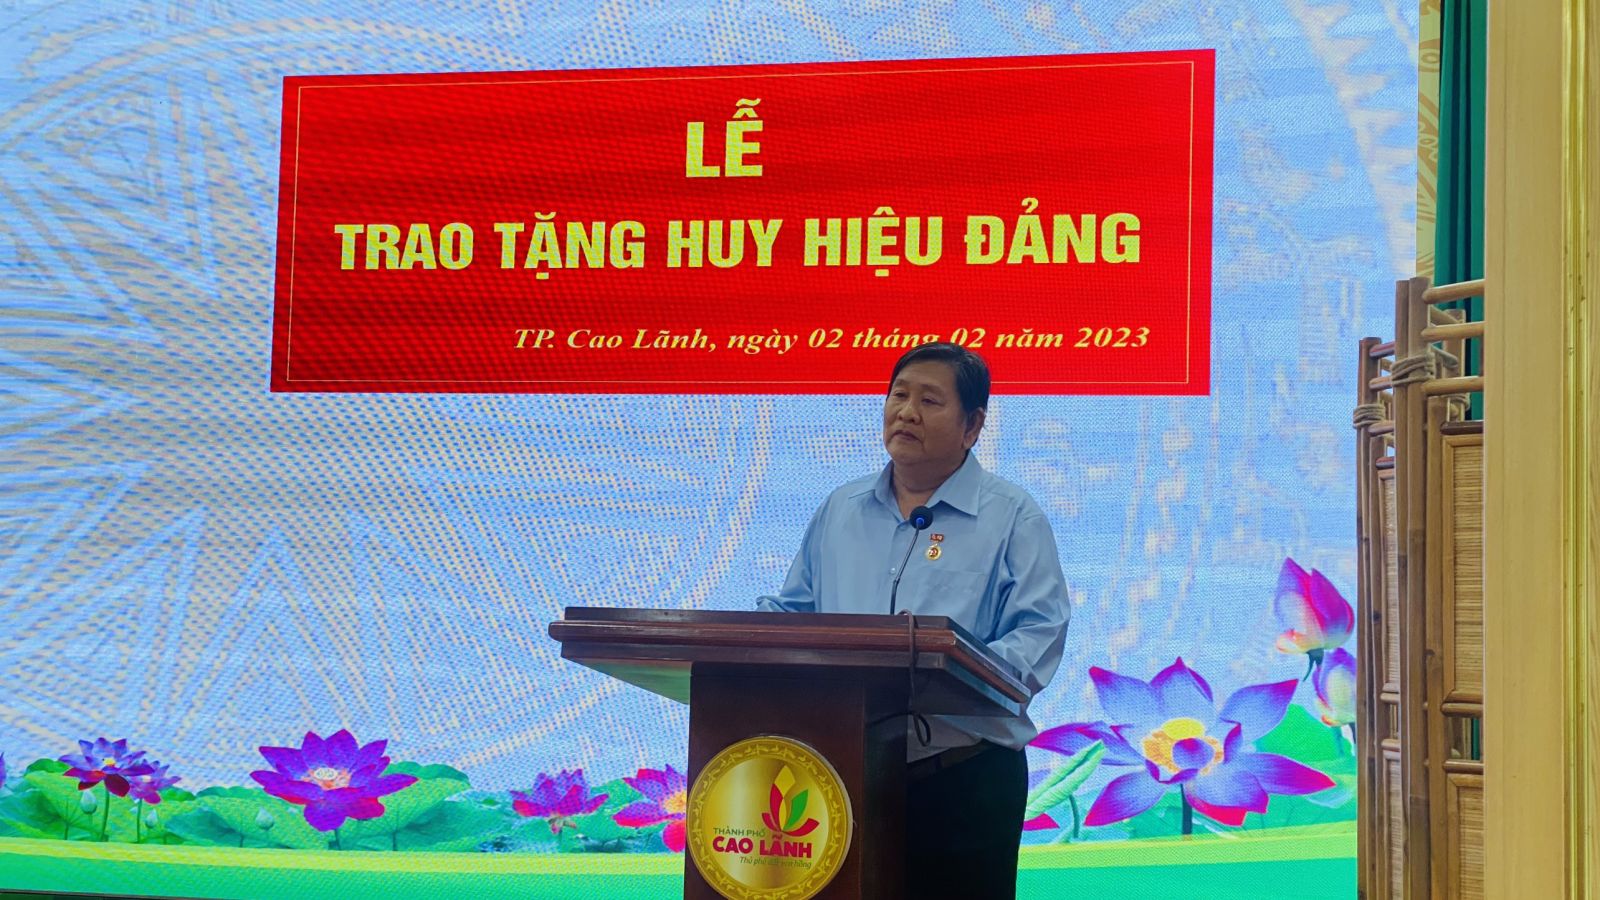 Đồng chí Ngô Minh Nghĩa - đảng viên Chi bộ khóm Thuận Trung đại diện đảng viên nhận Huy hiêu Đảng phát biểu tịa buổi lễ